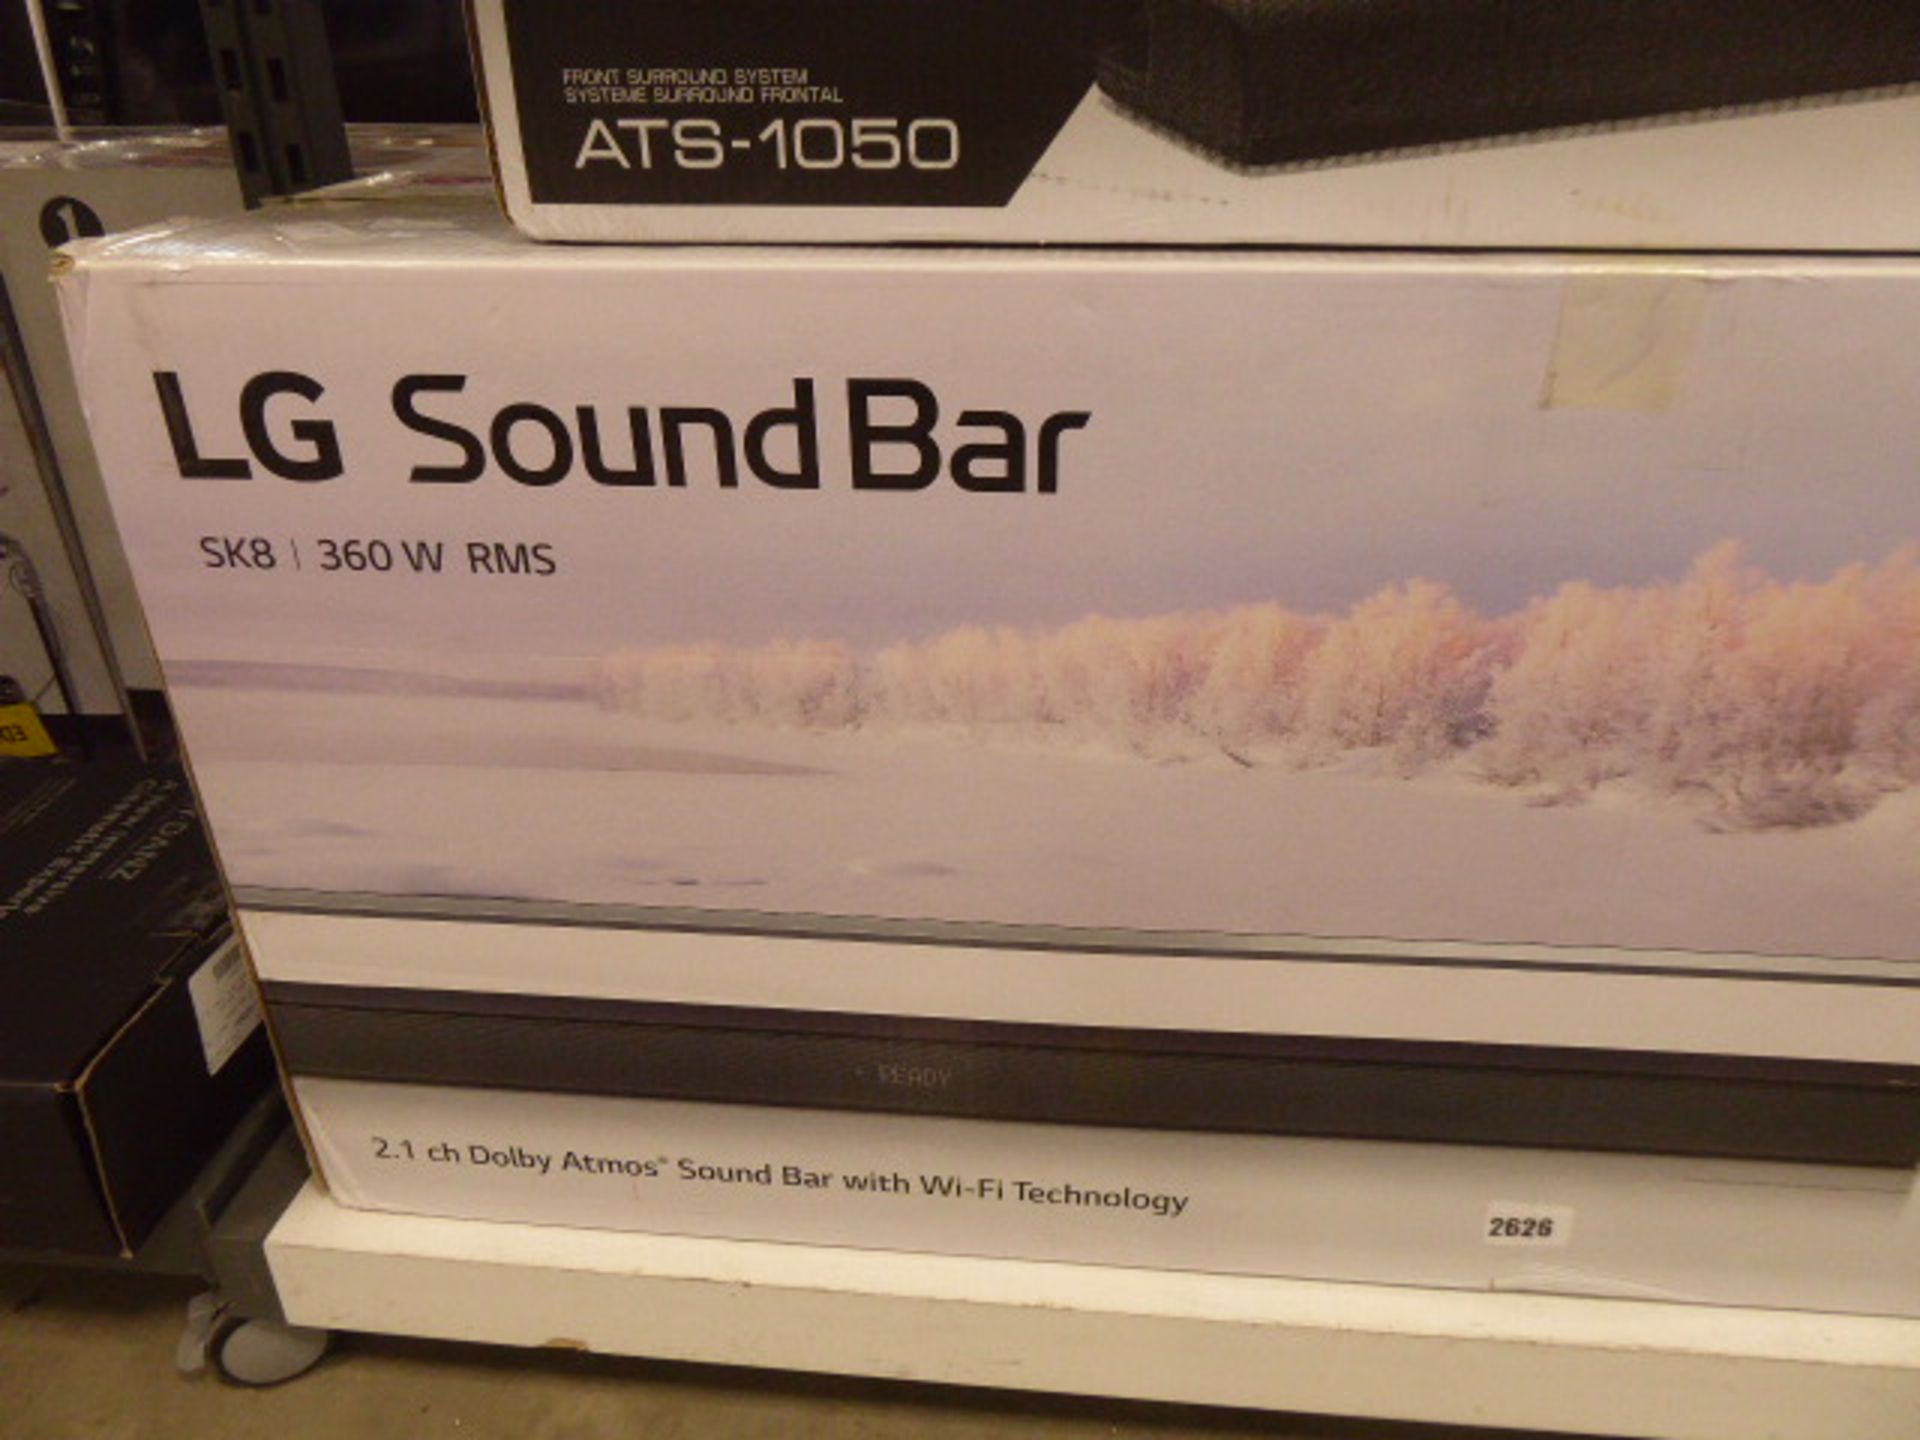 LG soundbar model SK8 in box - Image 2 of 2